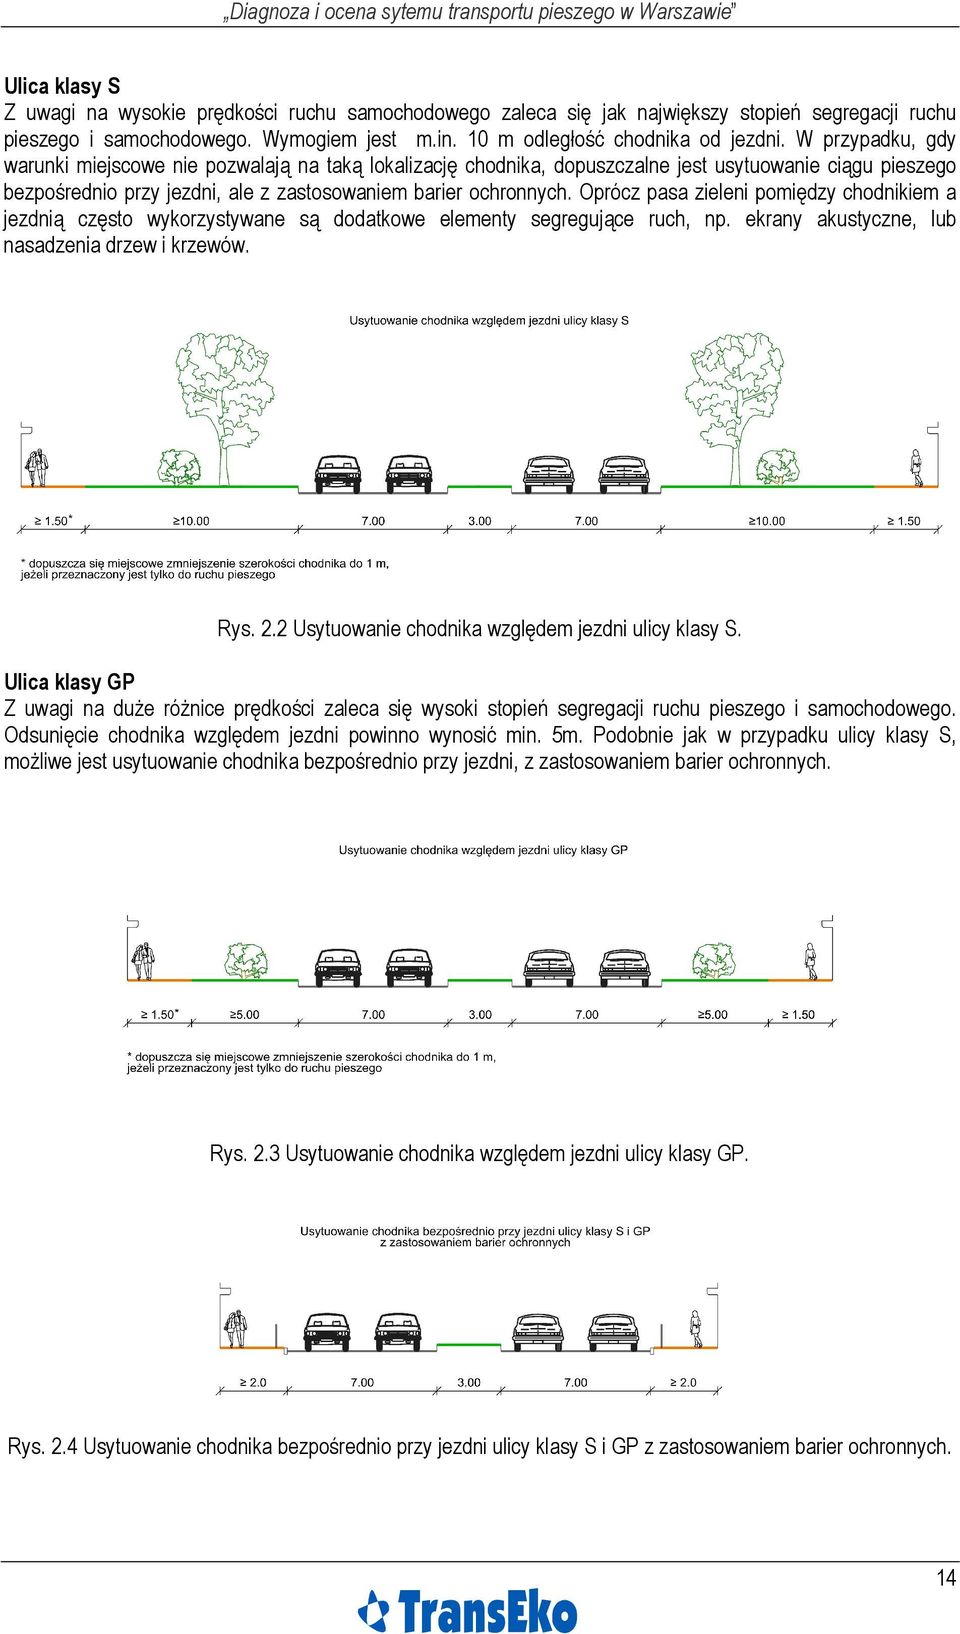 Oprócz pasa zieleni pomiędzy chodnikiem a jezdnią często wykorzystywane są dodatkowe elementy segregujące ruch, np. ekrany akustyczne, lub nasadzenia drzew i krzewów. Rys. 2.